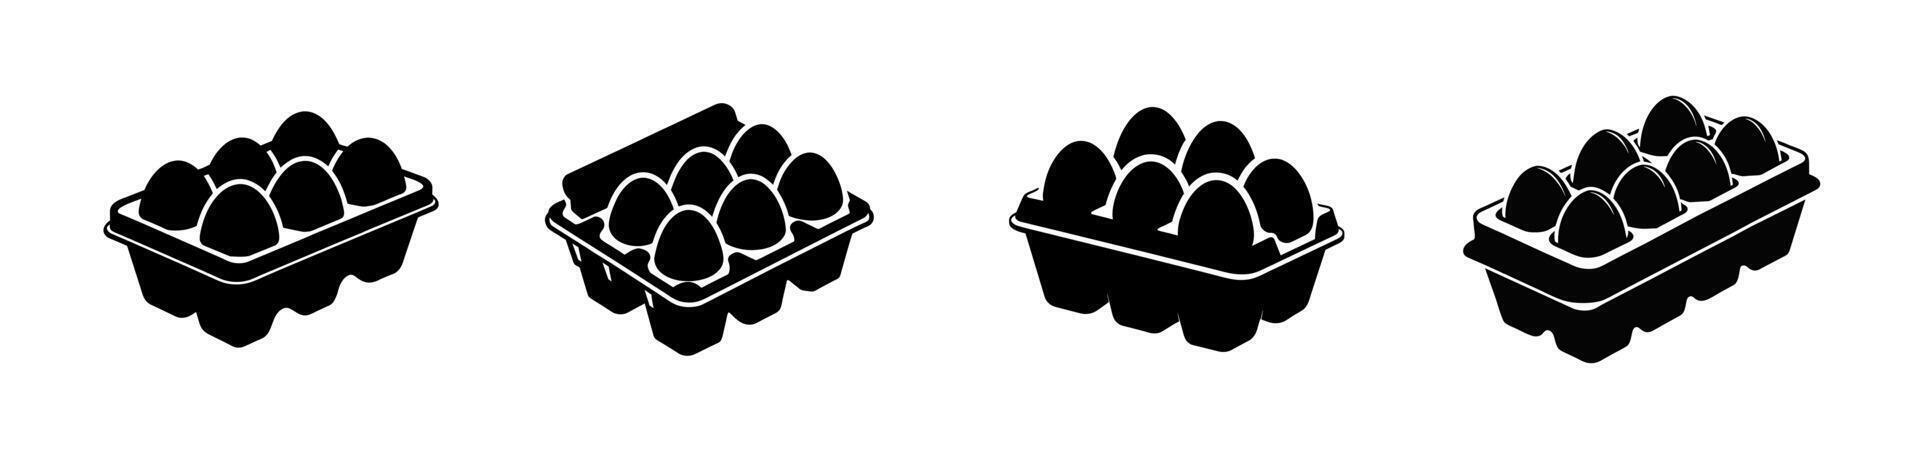 einstellen von Ei Kartons mit Eier. schwarz Silhouetten. schwarz und Weiß Ei Kisten Grafik Illustration. Symbol, Zeichen, Piktogramm. Konzept von Essen Lagerung, Küche wesentliche, Lebensmittelgeschäft. isoliert auf Weiß Hintergrund vektor